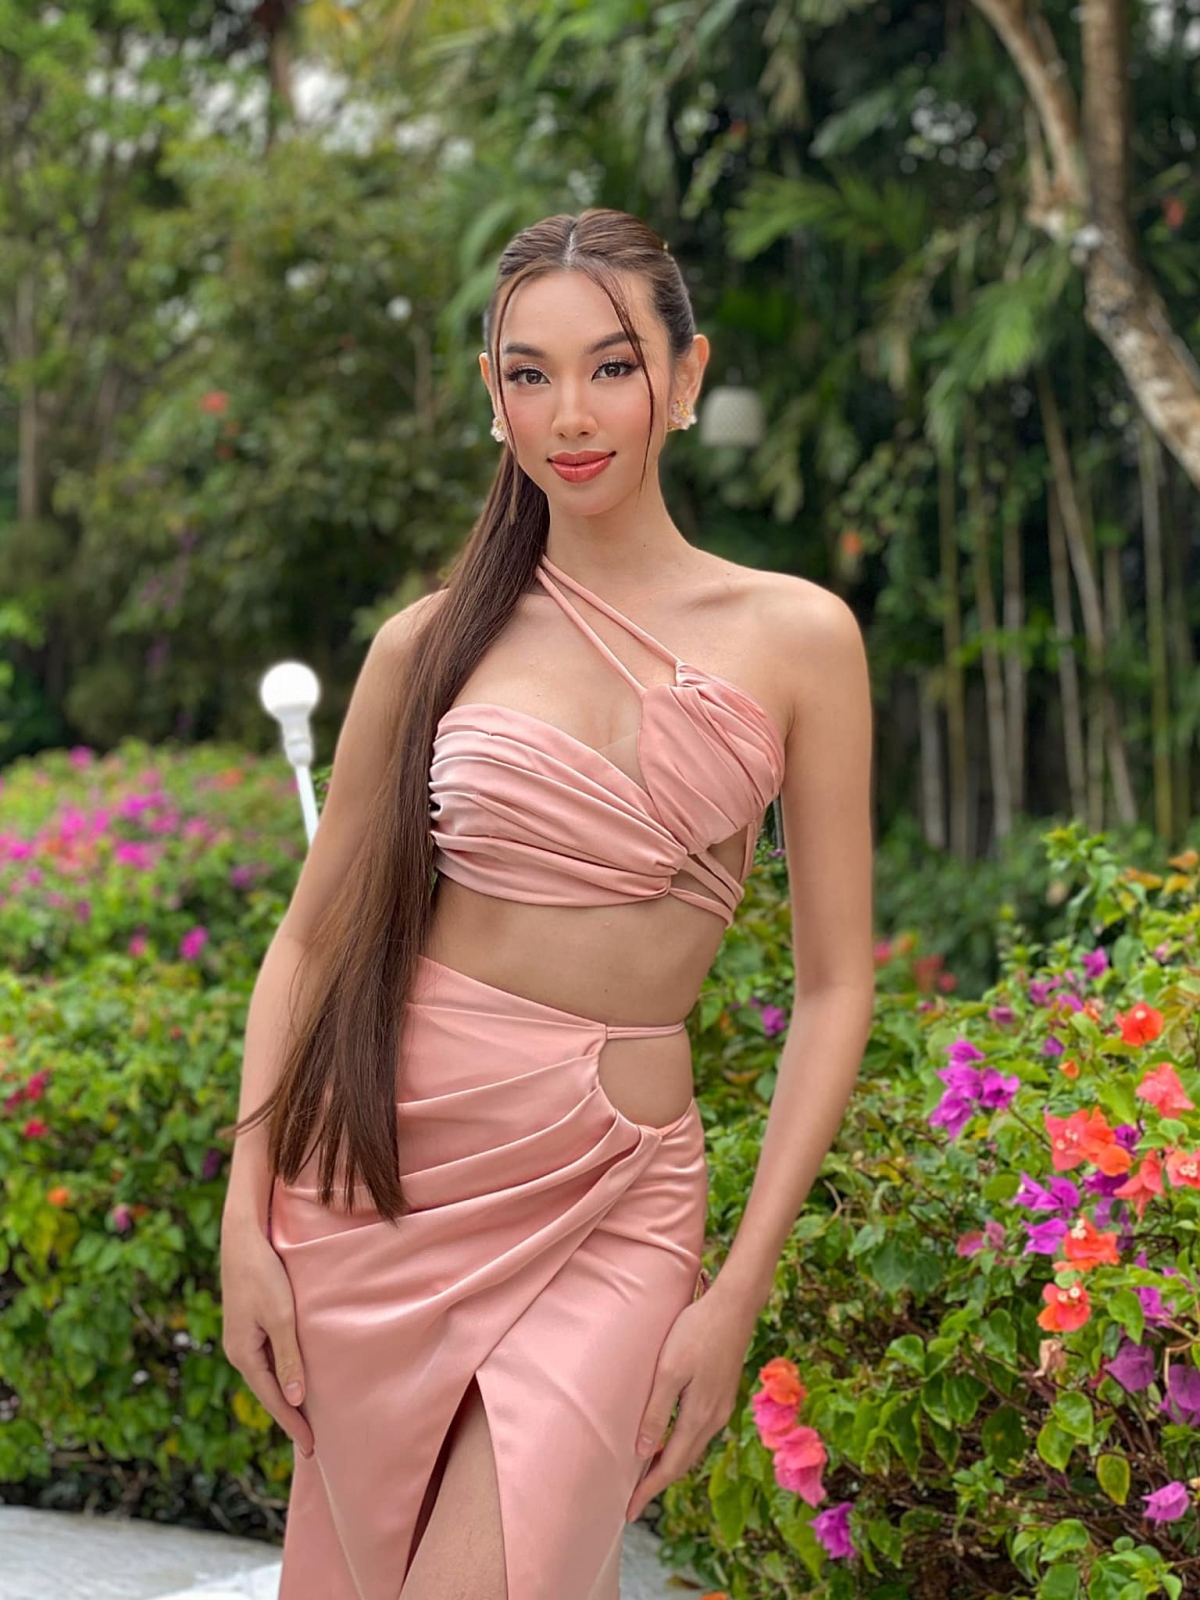 Hoa hậu Thùy Tiên khoe sắc vóc quyến rũ với đầm cut-out nóng bỏng ở Indonesia - Ảnh 1.